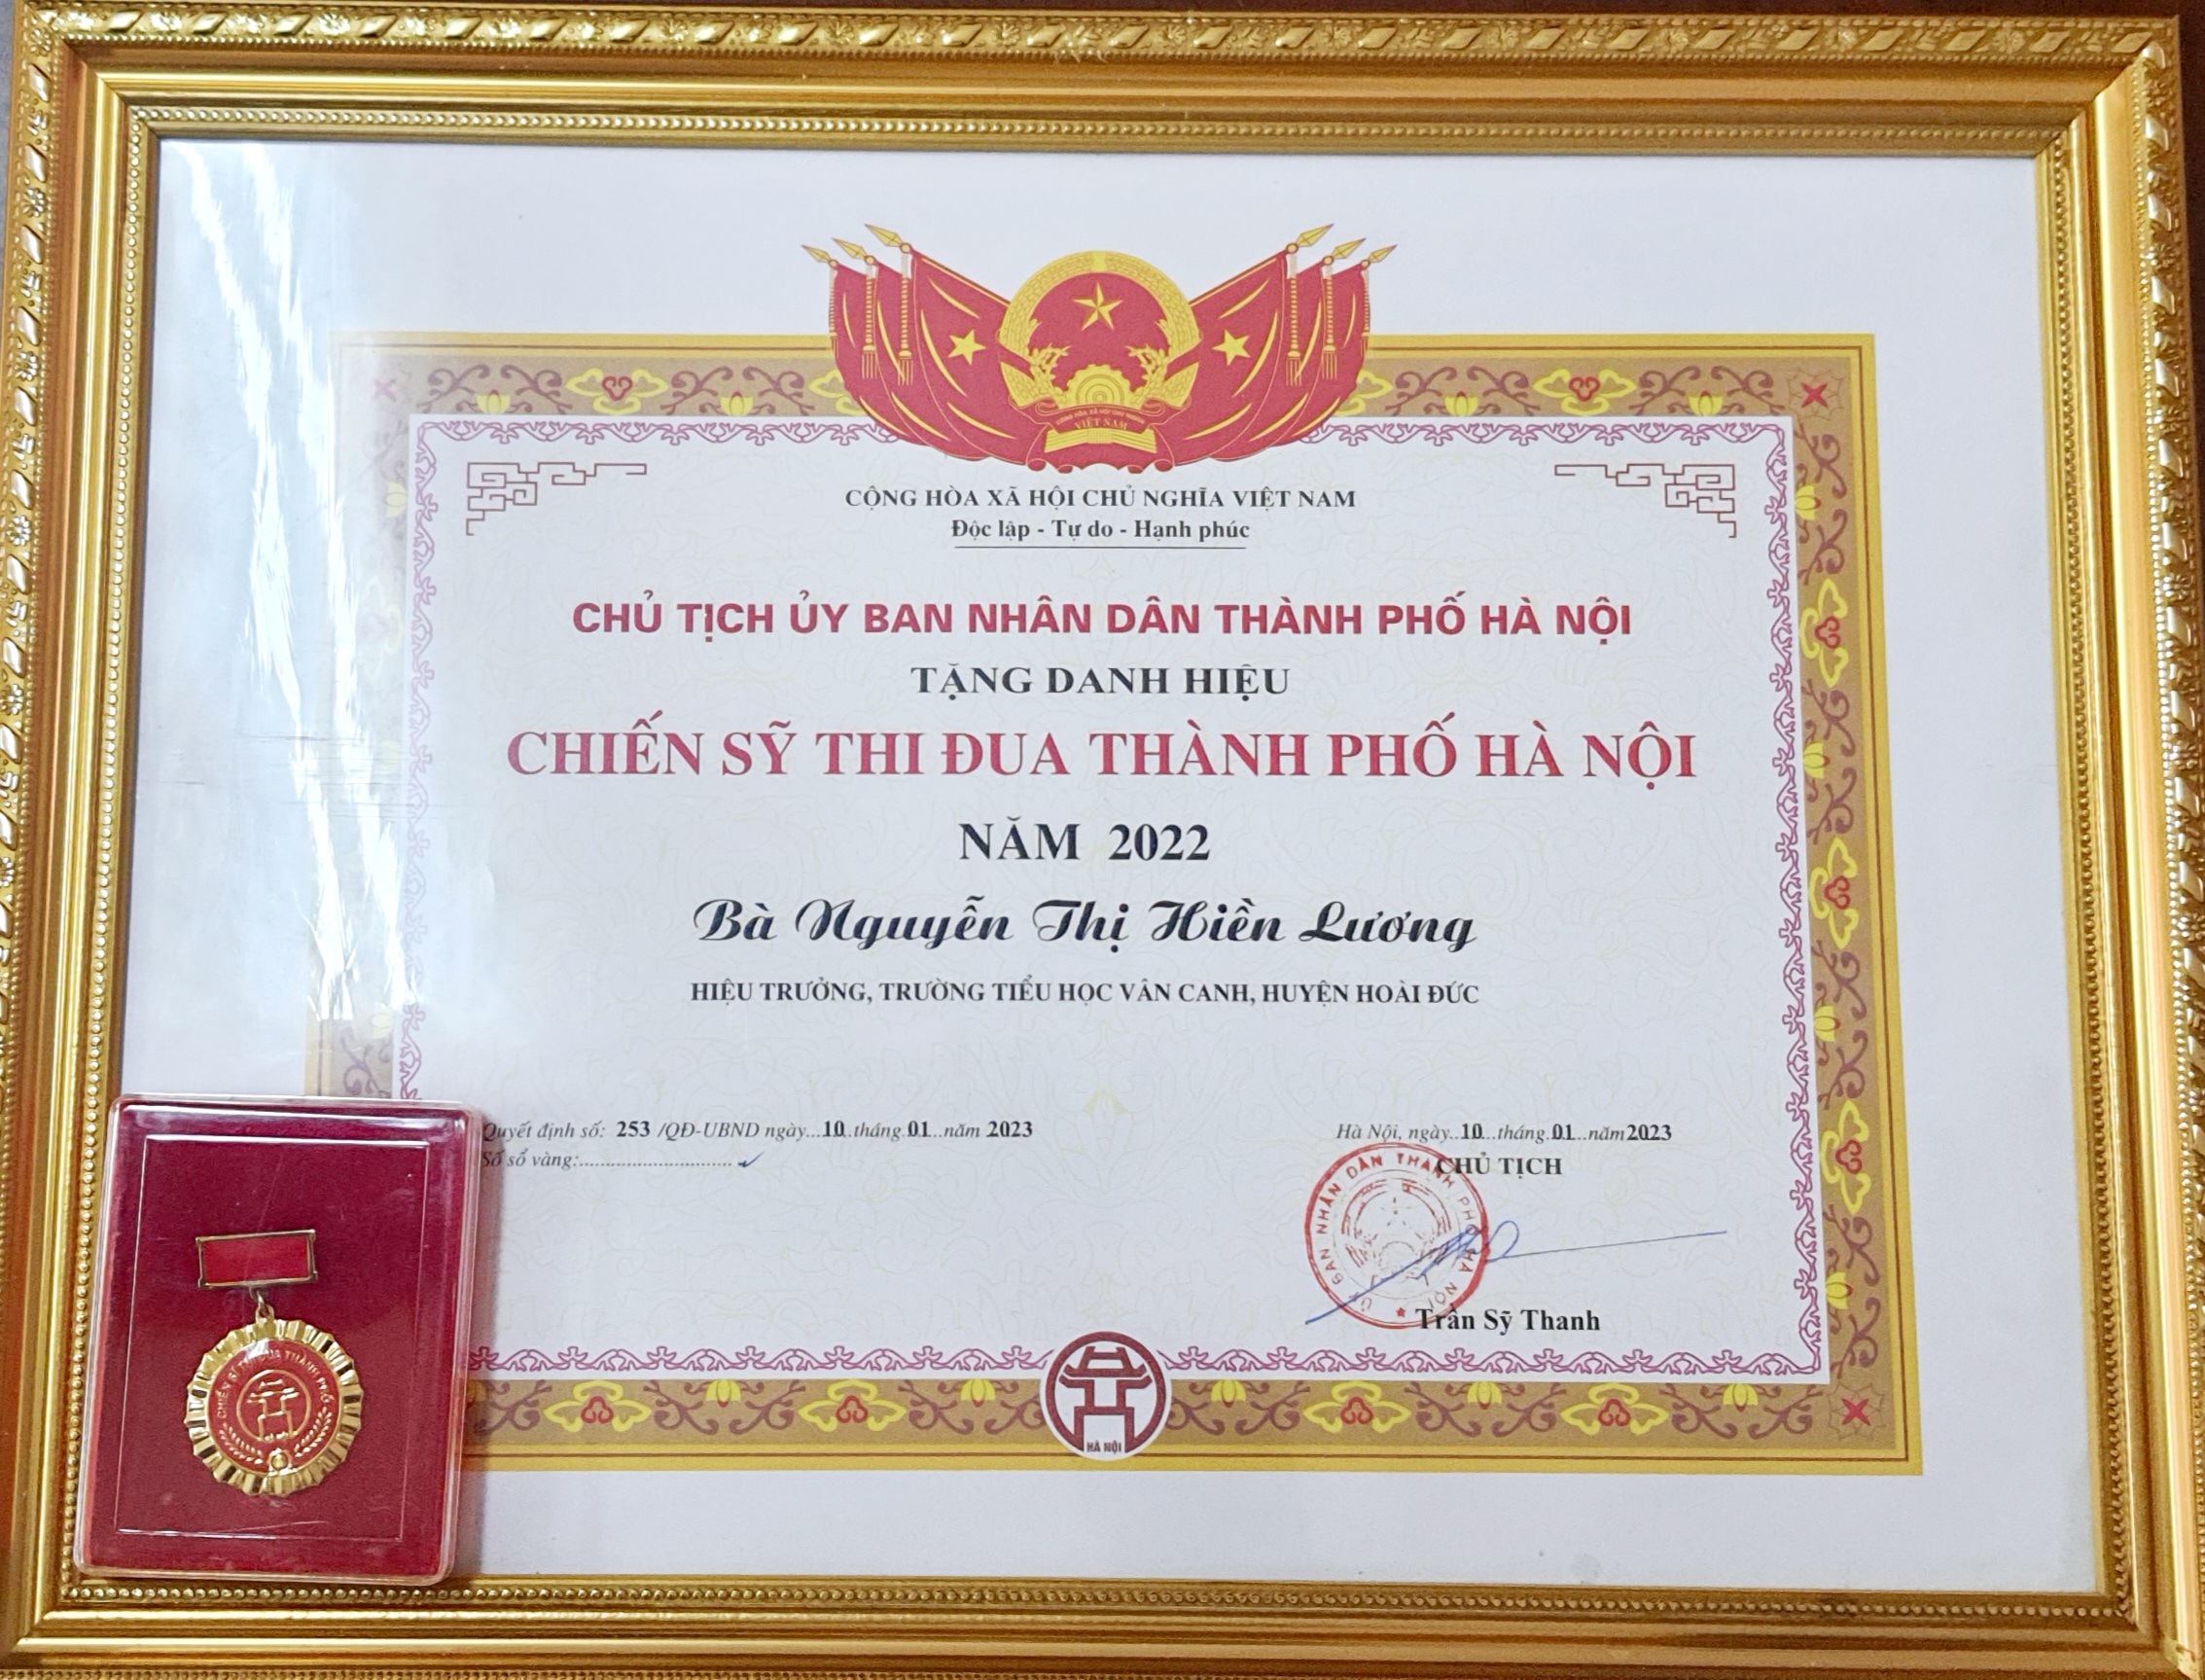 Cô giáo Nguyễn Thị Hiền Lương - Bí thư Chi bộ - Hiệu trưởng nhà trường đã vinh dự đạt danh hiệu Chiến sĩ thi đua TP